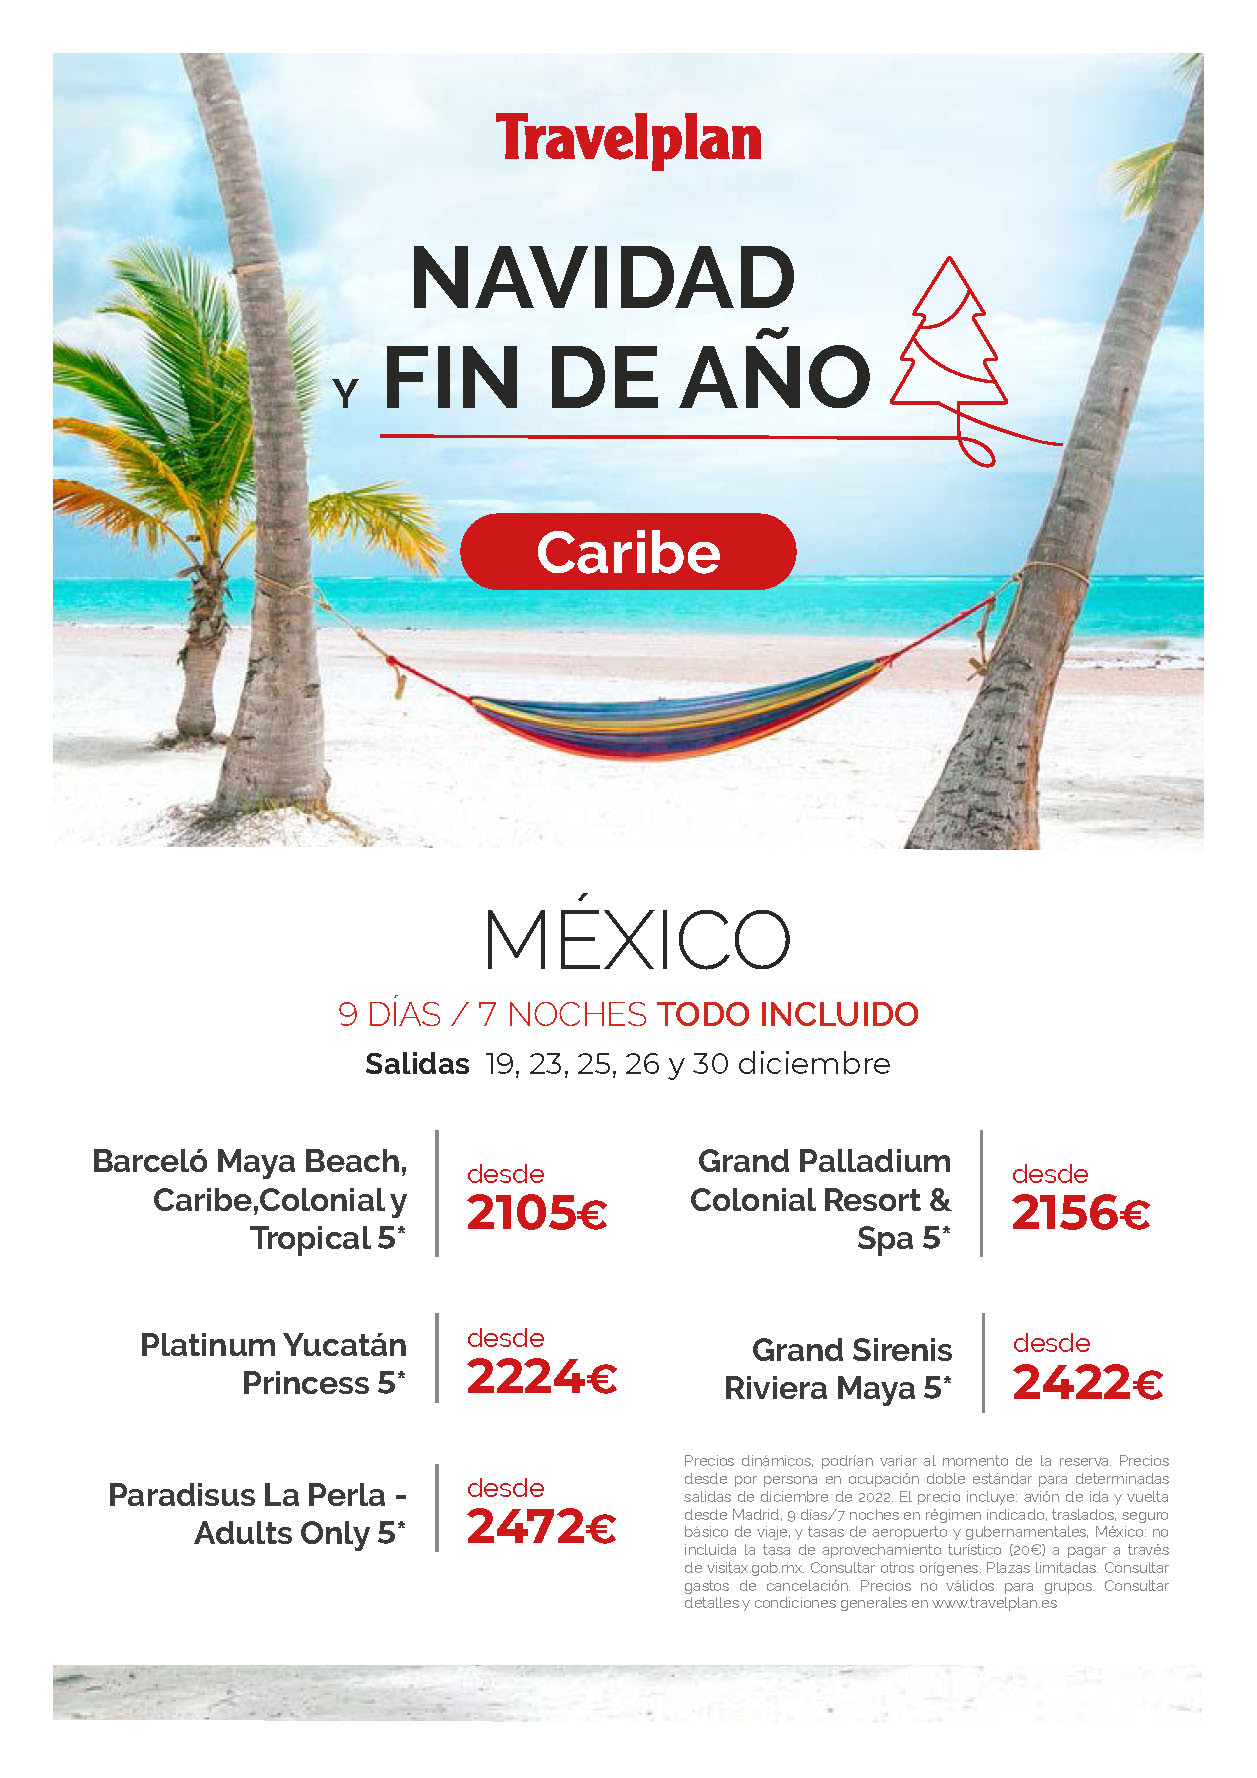 Ofertas Travelplan Navidad y Fin de Año 2022 en Mexico Riviera Maya Todo Incluido 9 dias salidas en vuelo directo desde Madrid